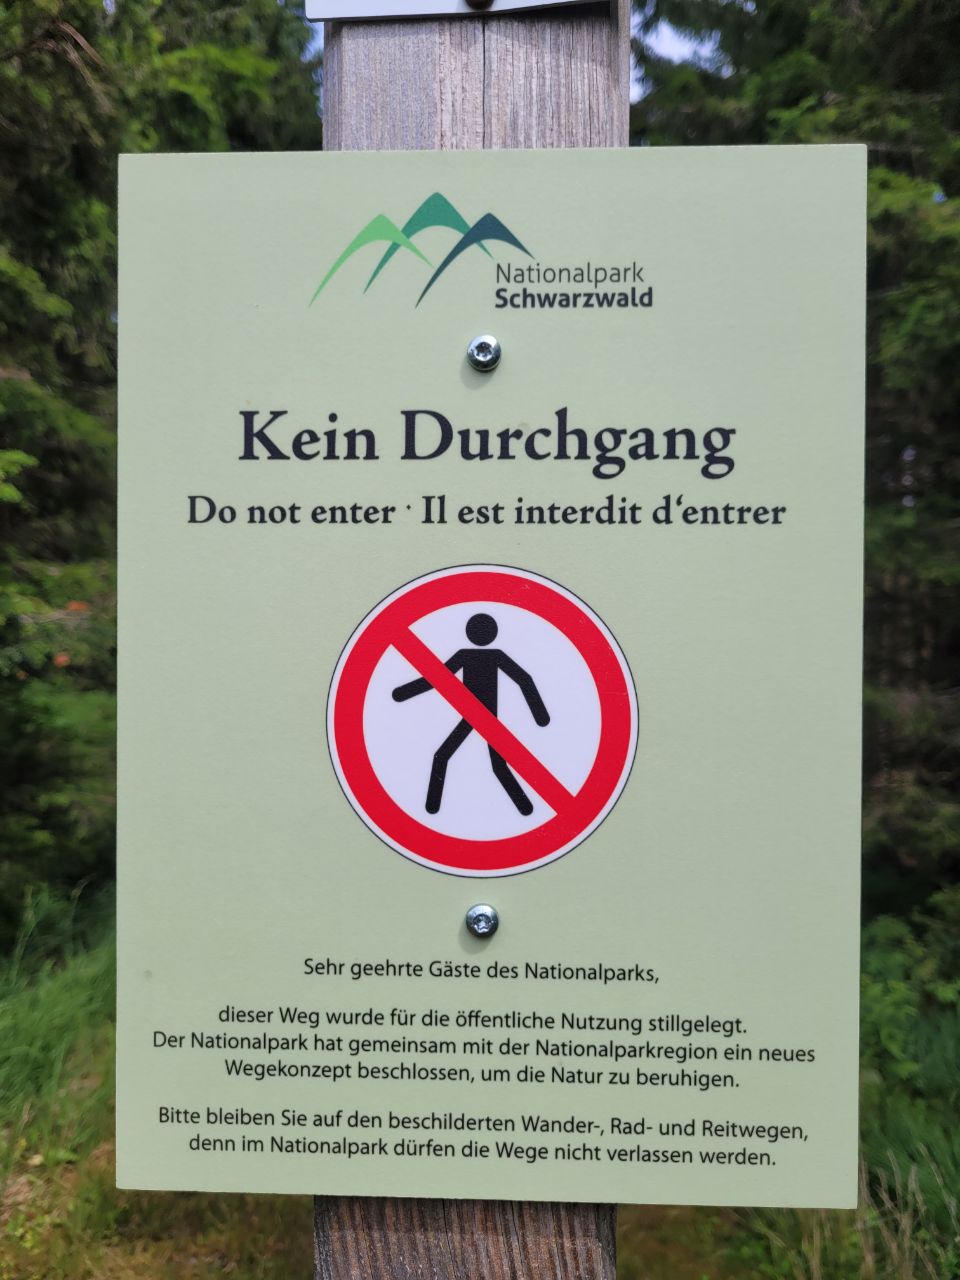 Abb. 1 zeigt ein Schild zum Durchgangsverbot im Nationalpark.